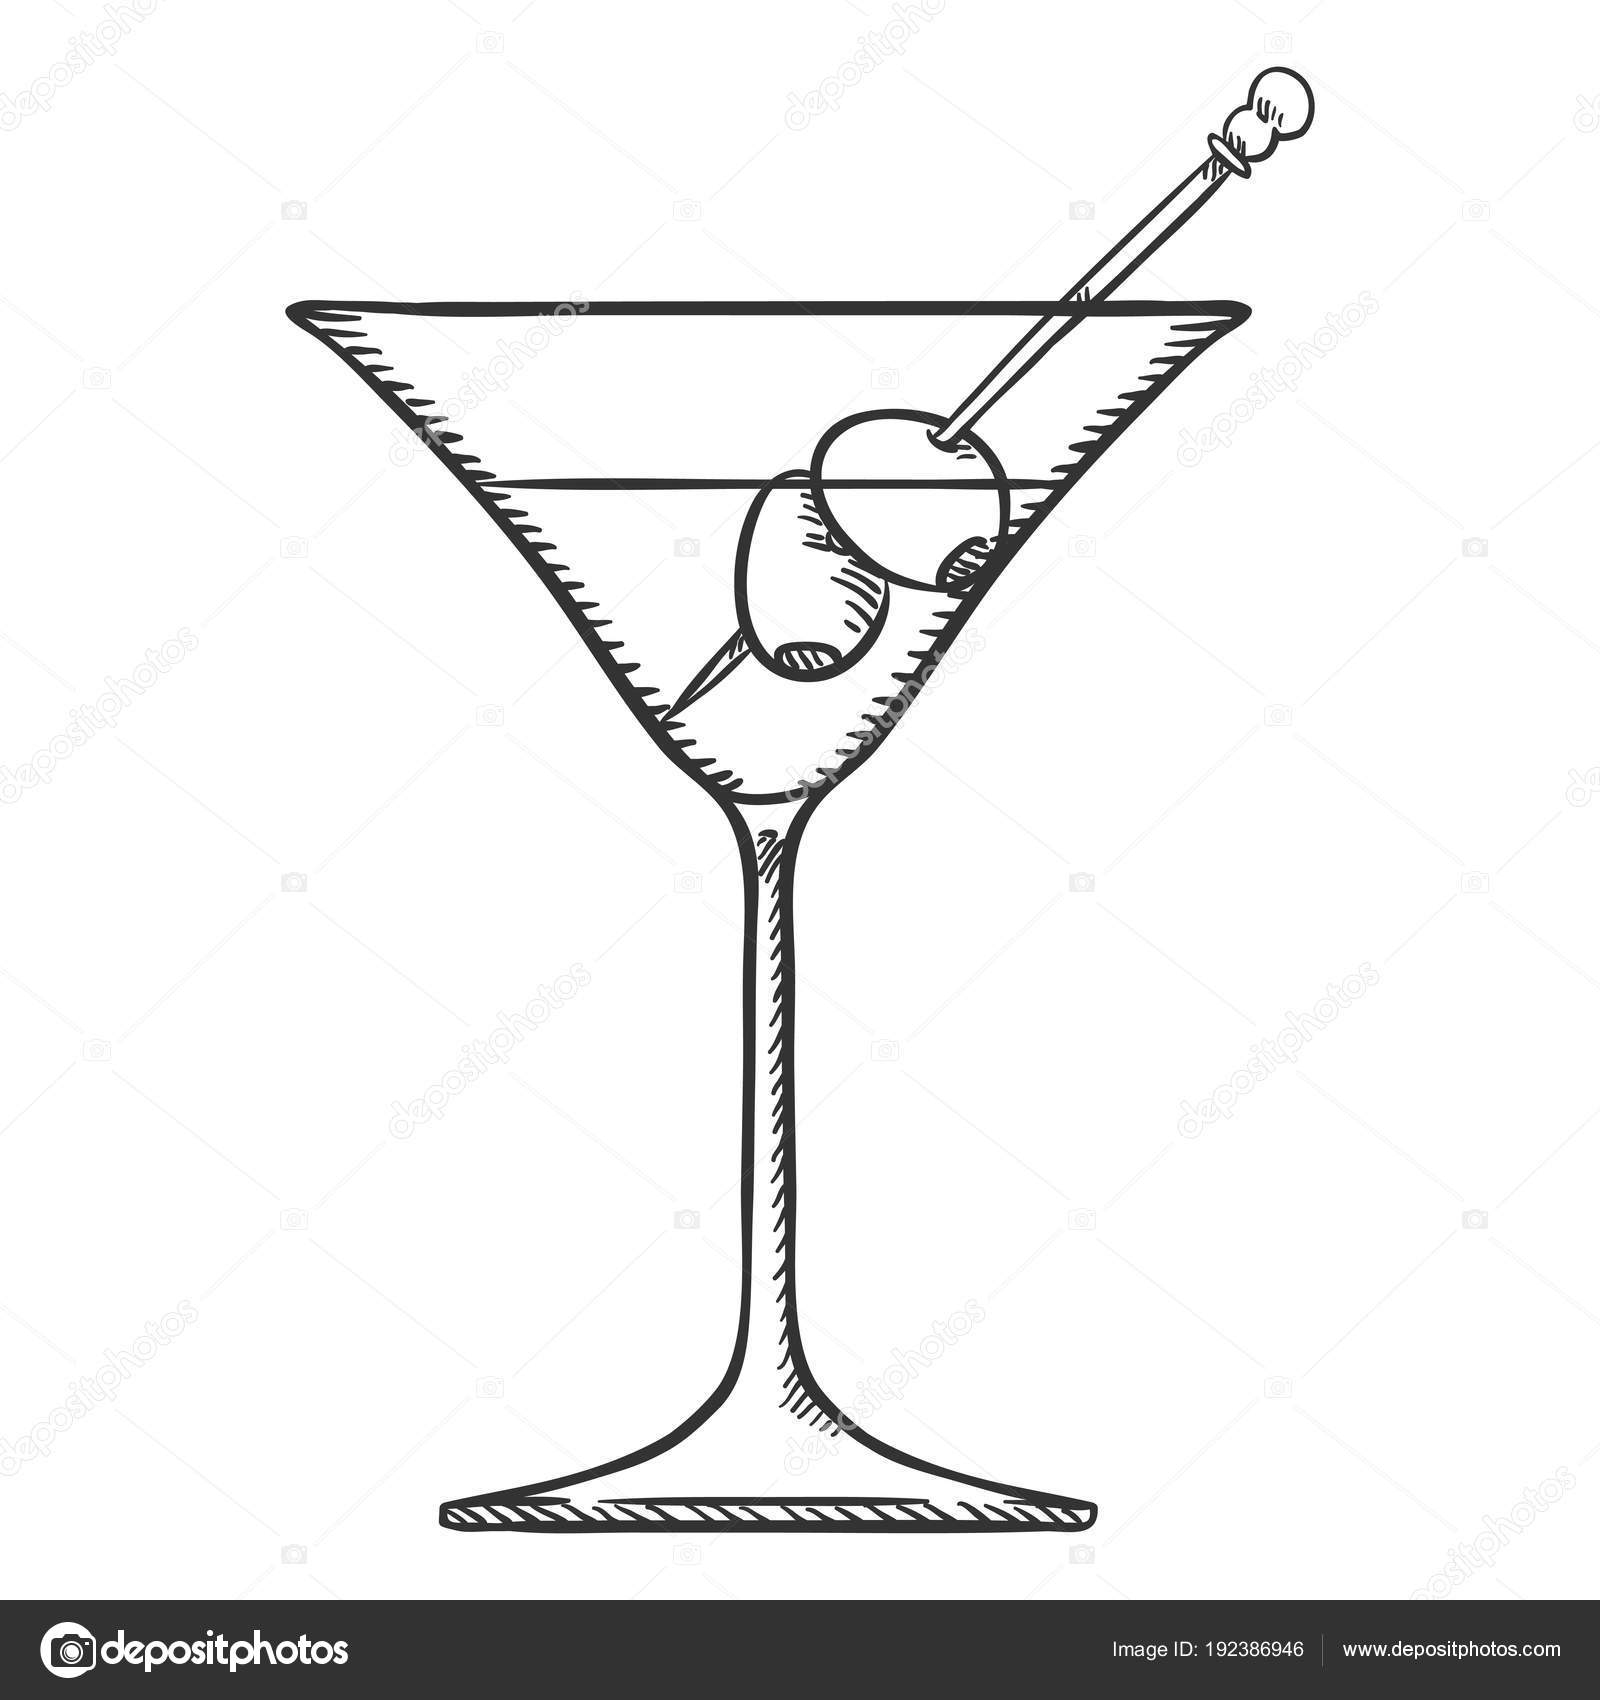 Martini-foton och fler bilder på Martini - Martini, Vit bakgrund,  Martiniglas - iStock